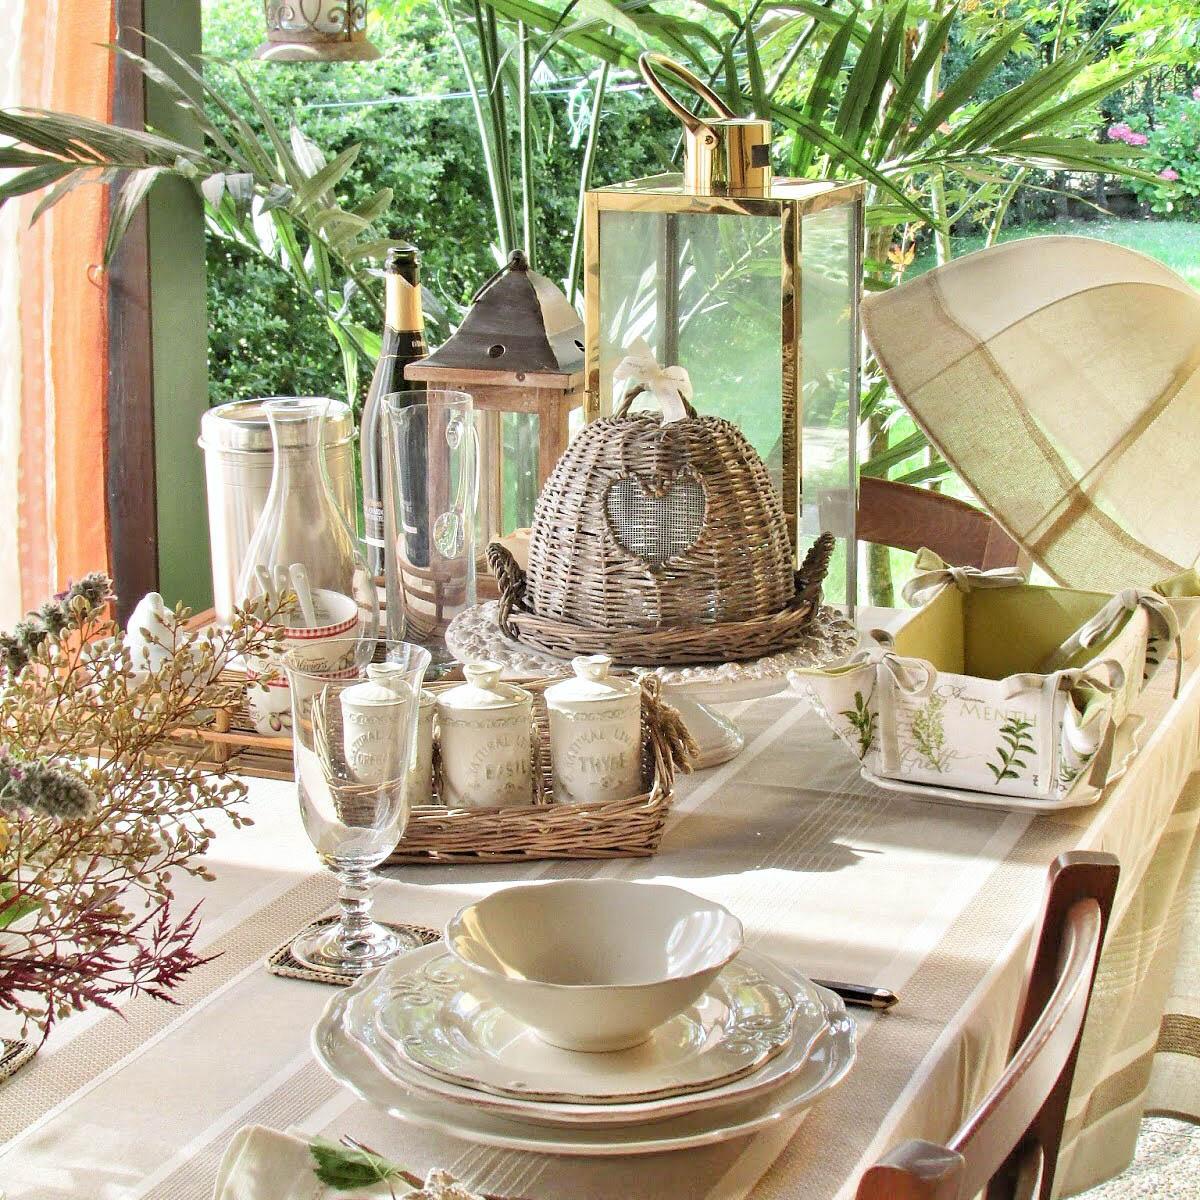 Apparecchiare tavola in giardino: idee per una tavola estiva elegante